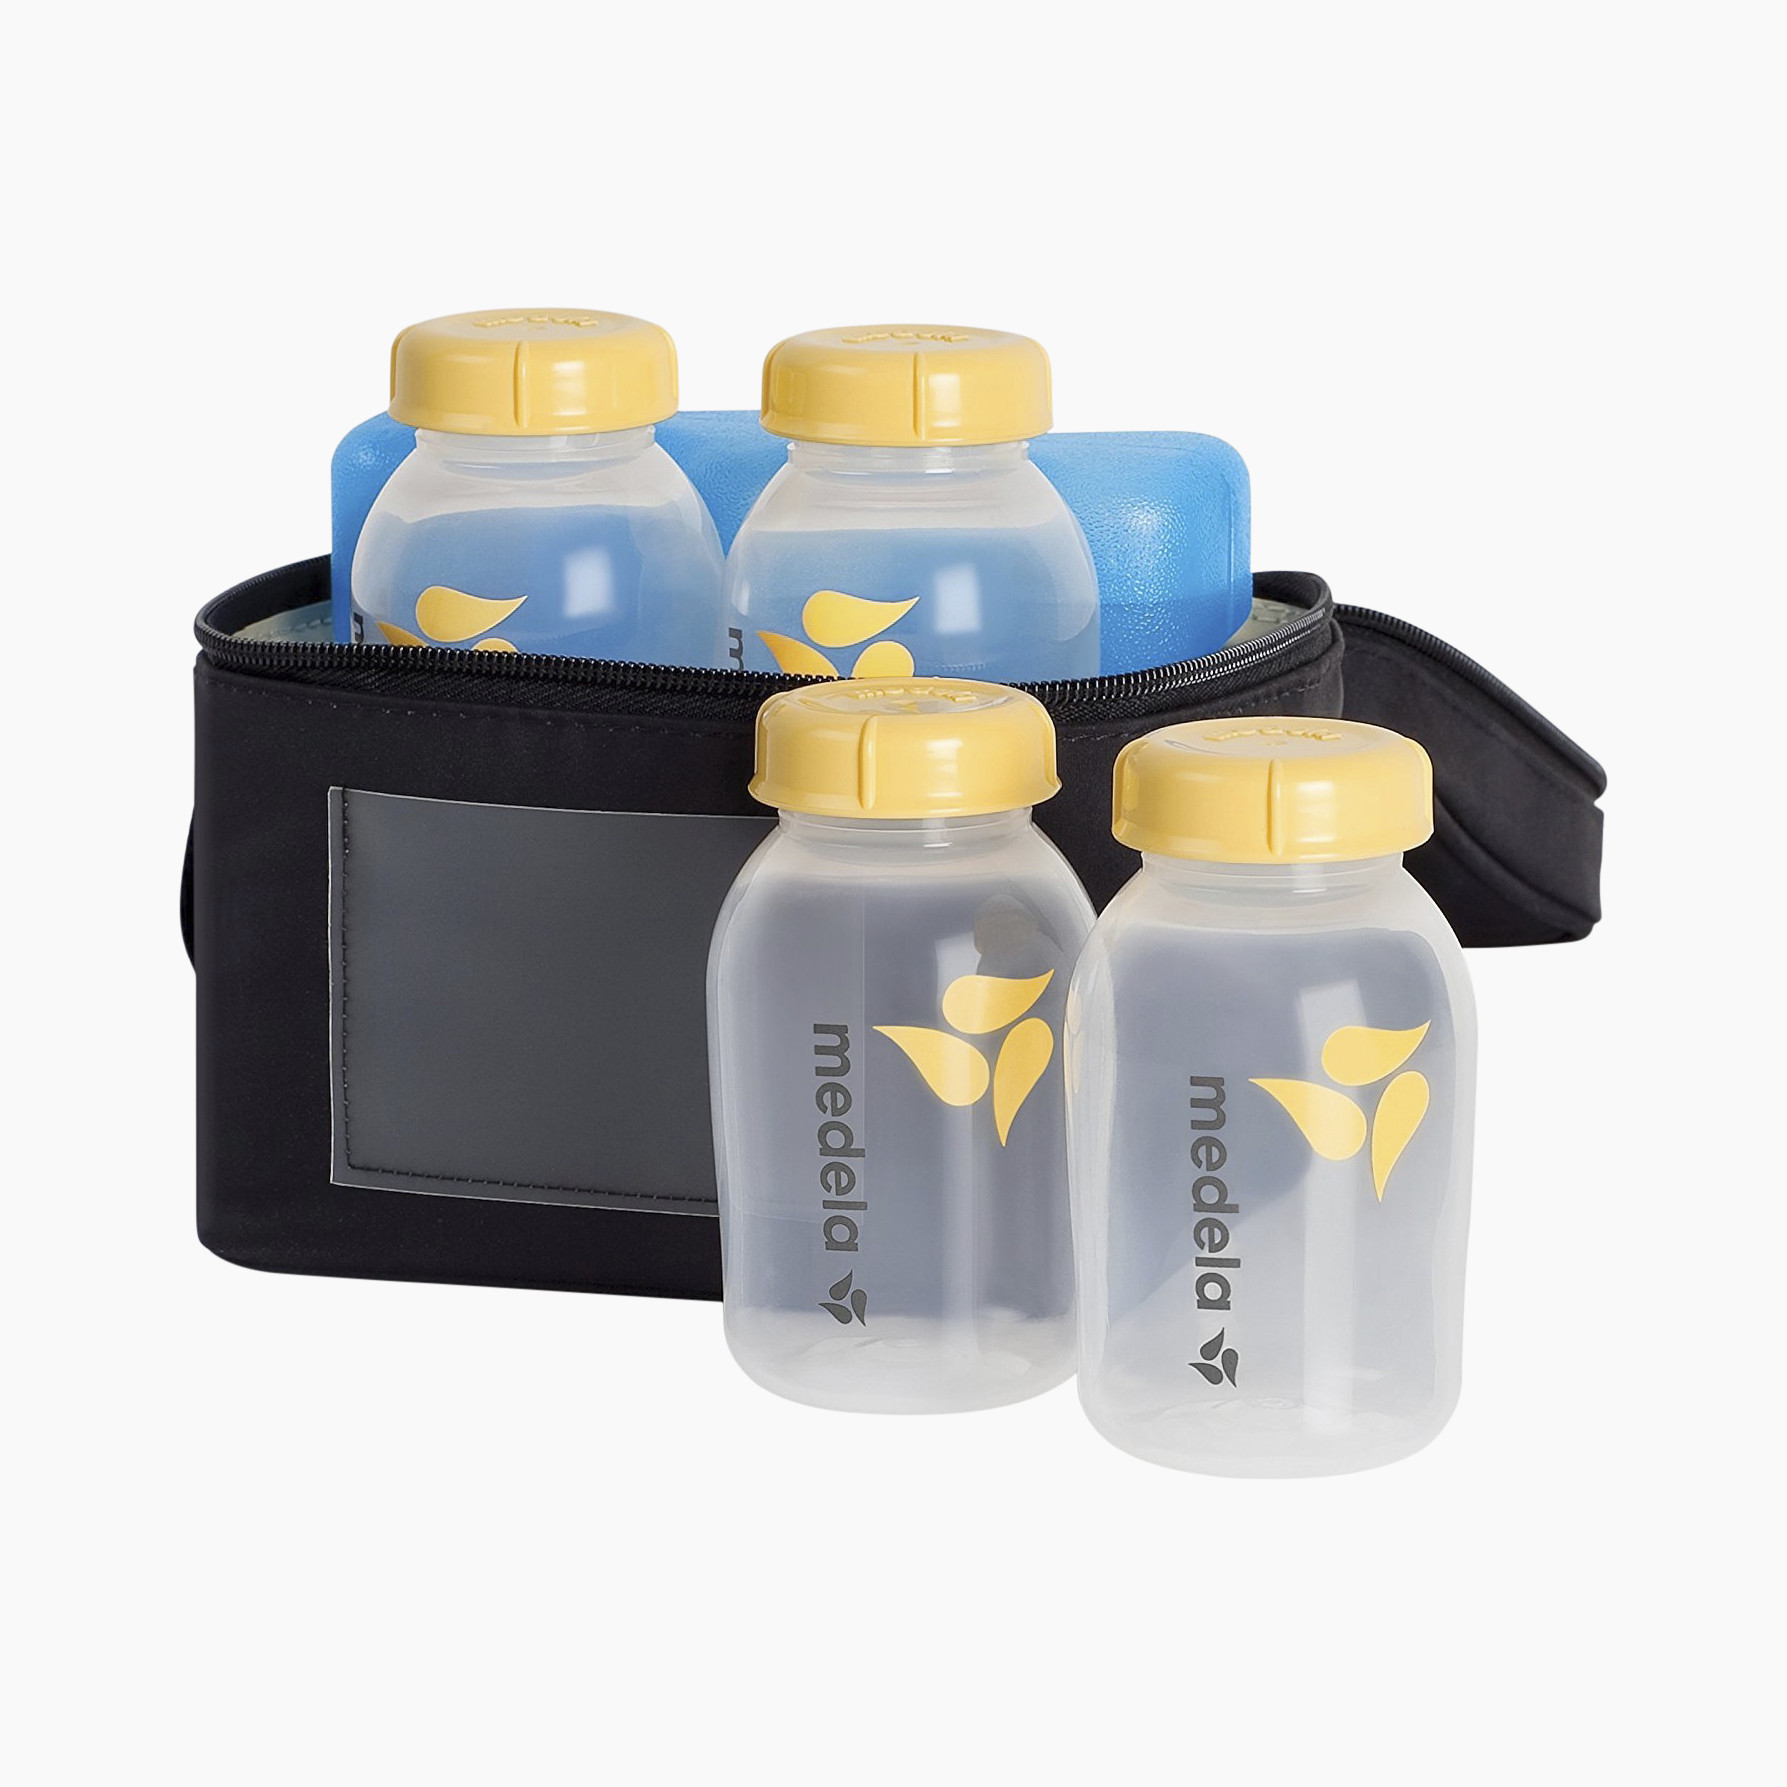 Medela Breast Milk Cooler and Tranport Set-4-5oz bottles, ice pack